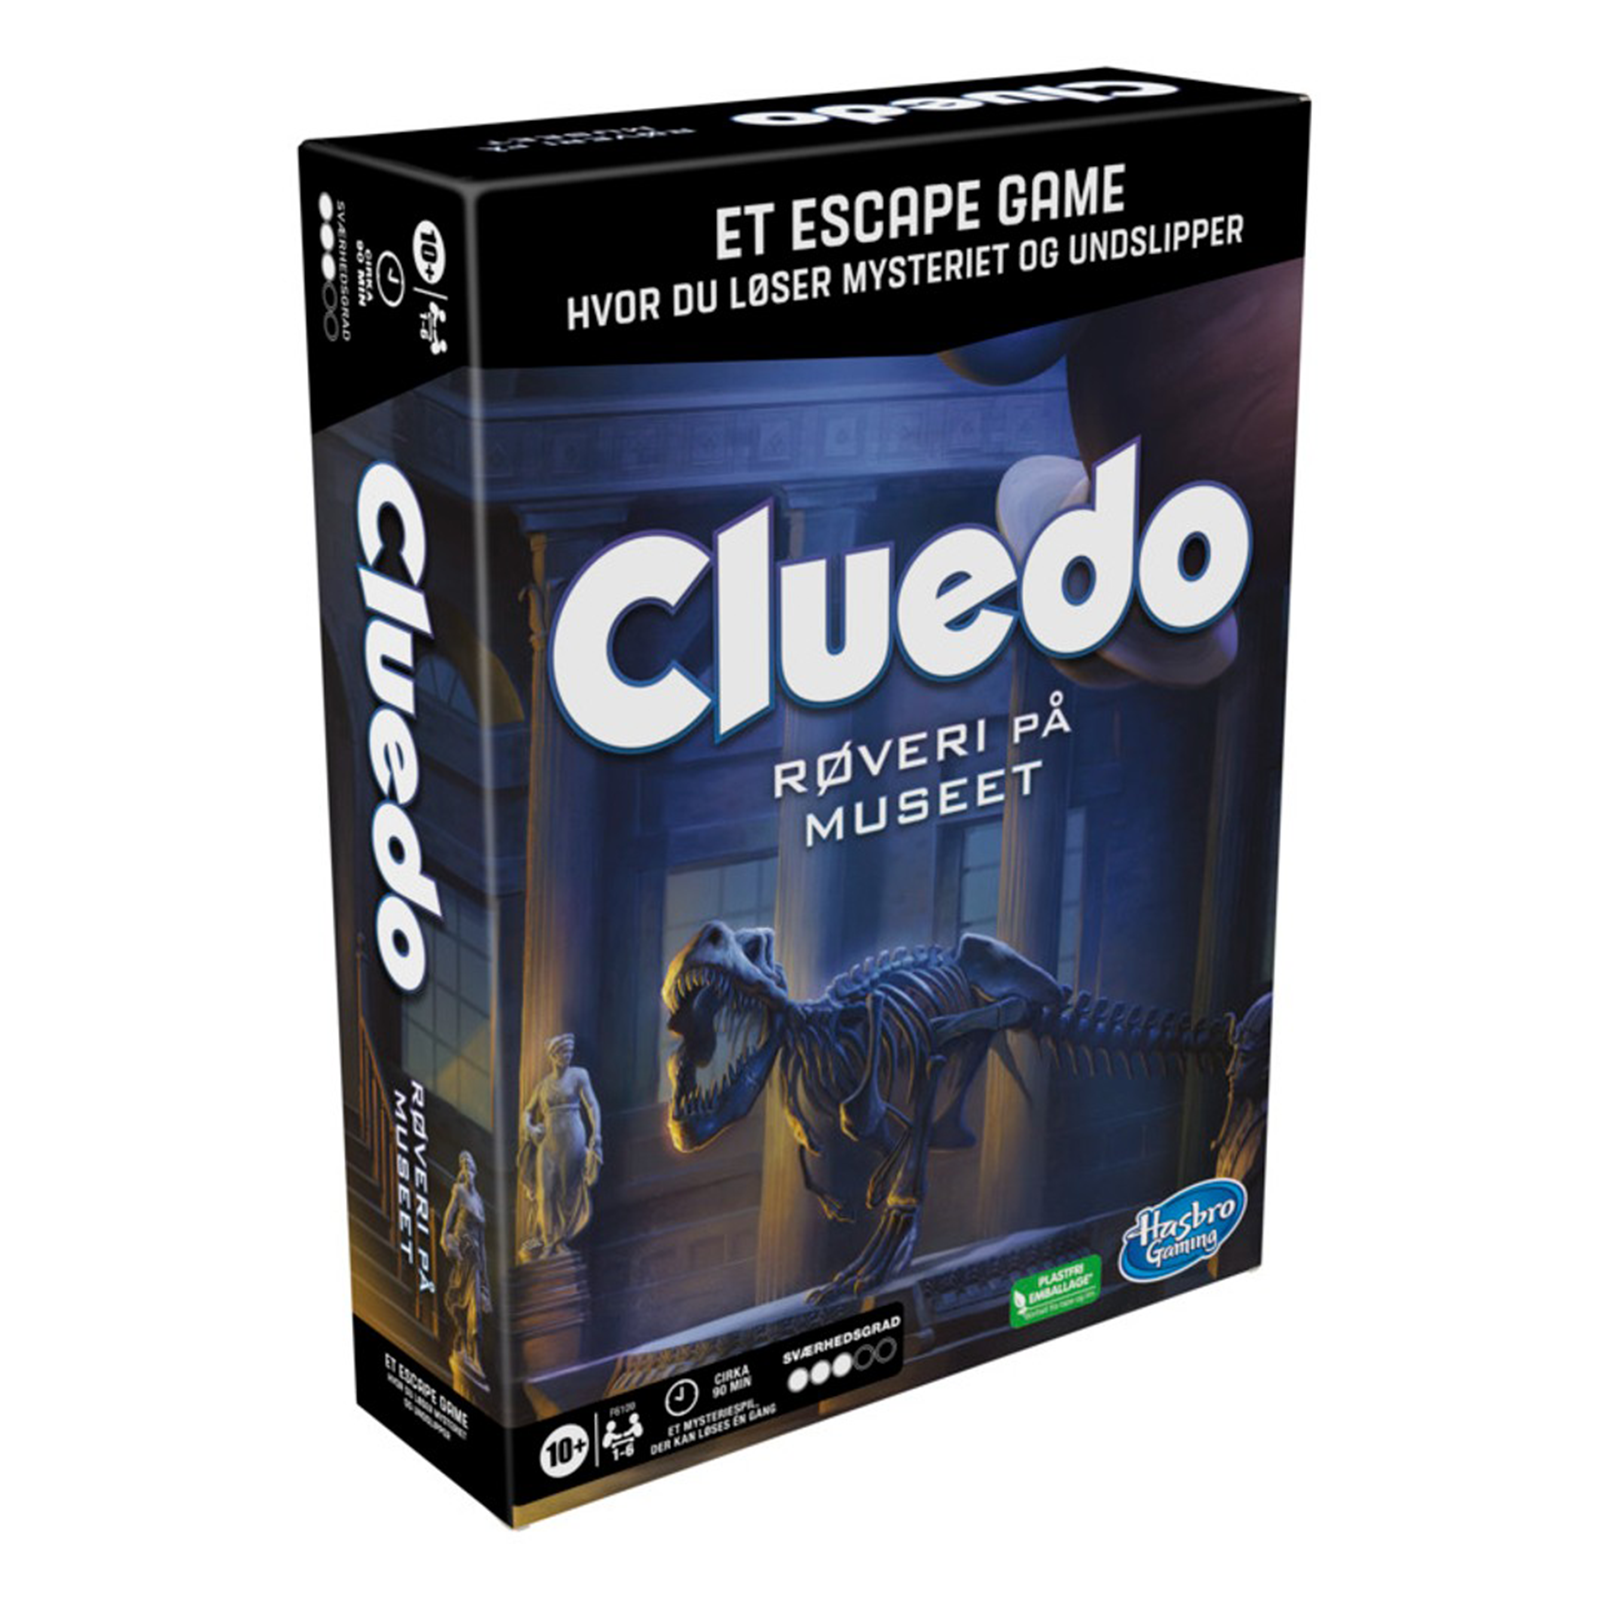 Cluedo - Røveri på Museet